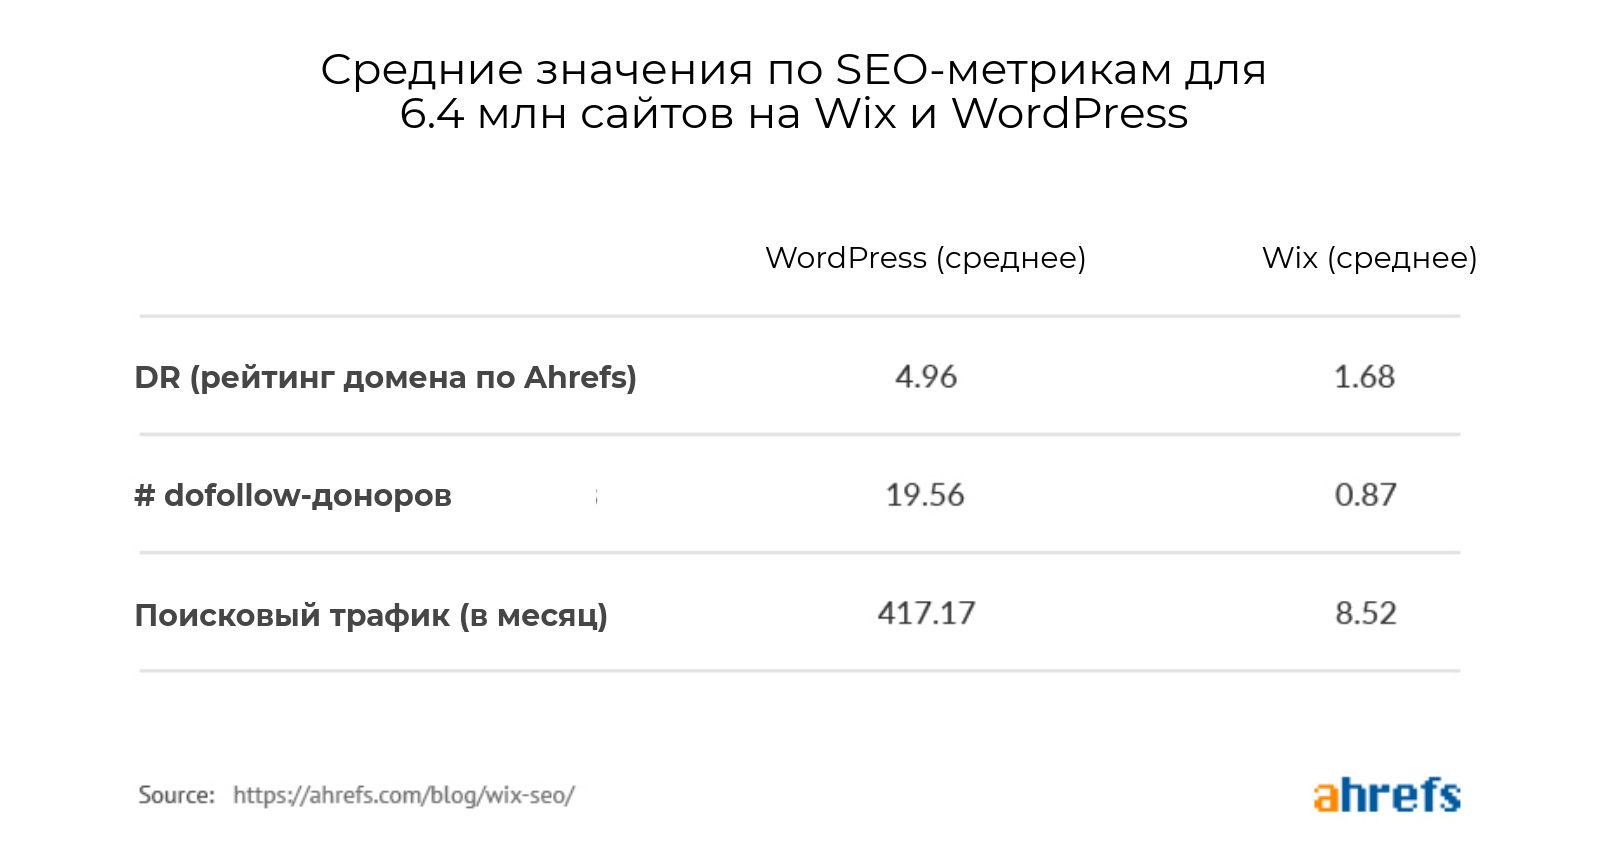 Средние значения SEO-показателей для сайтов на Wix и WordPress